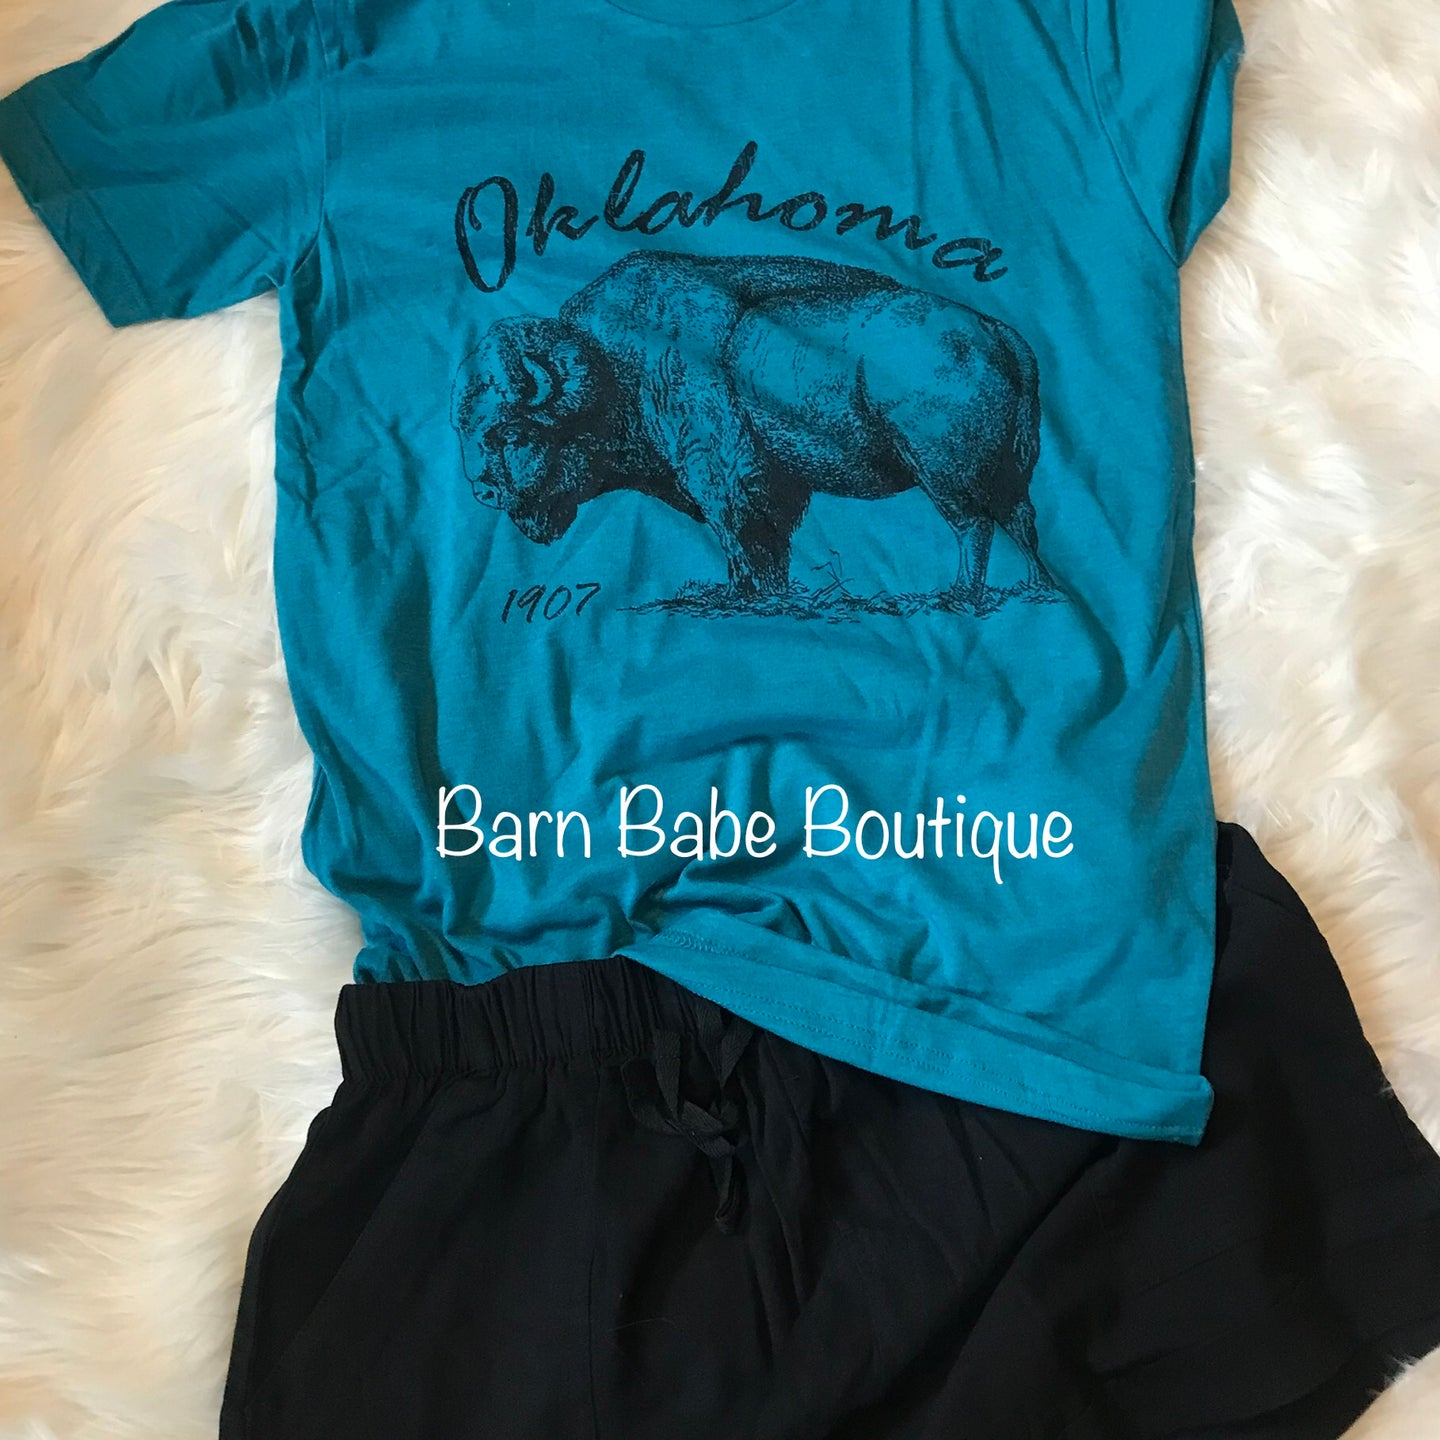 Oklahoma Buffalo T-Shirt